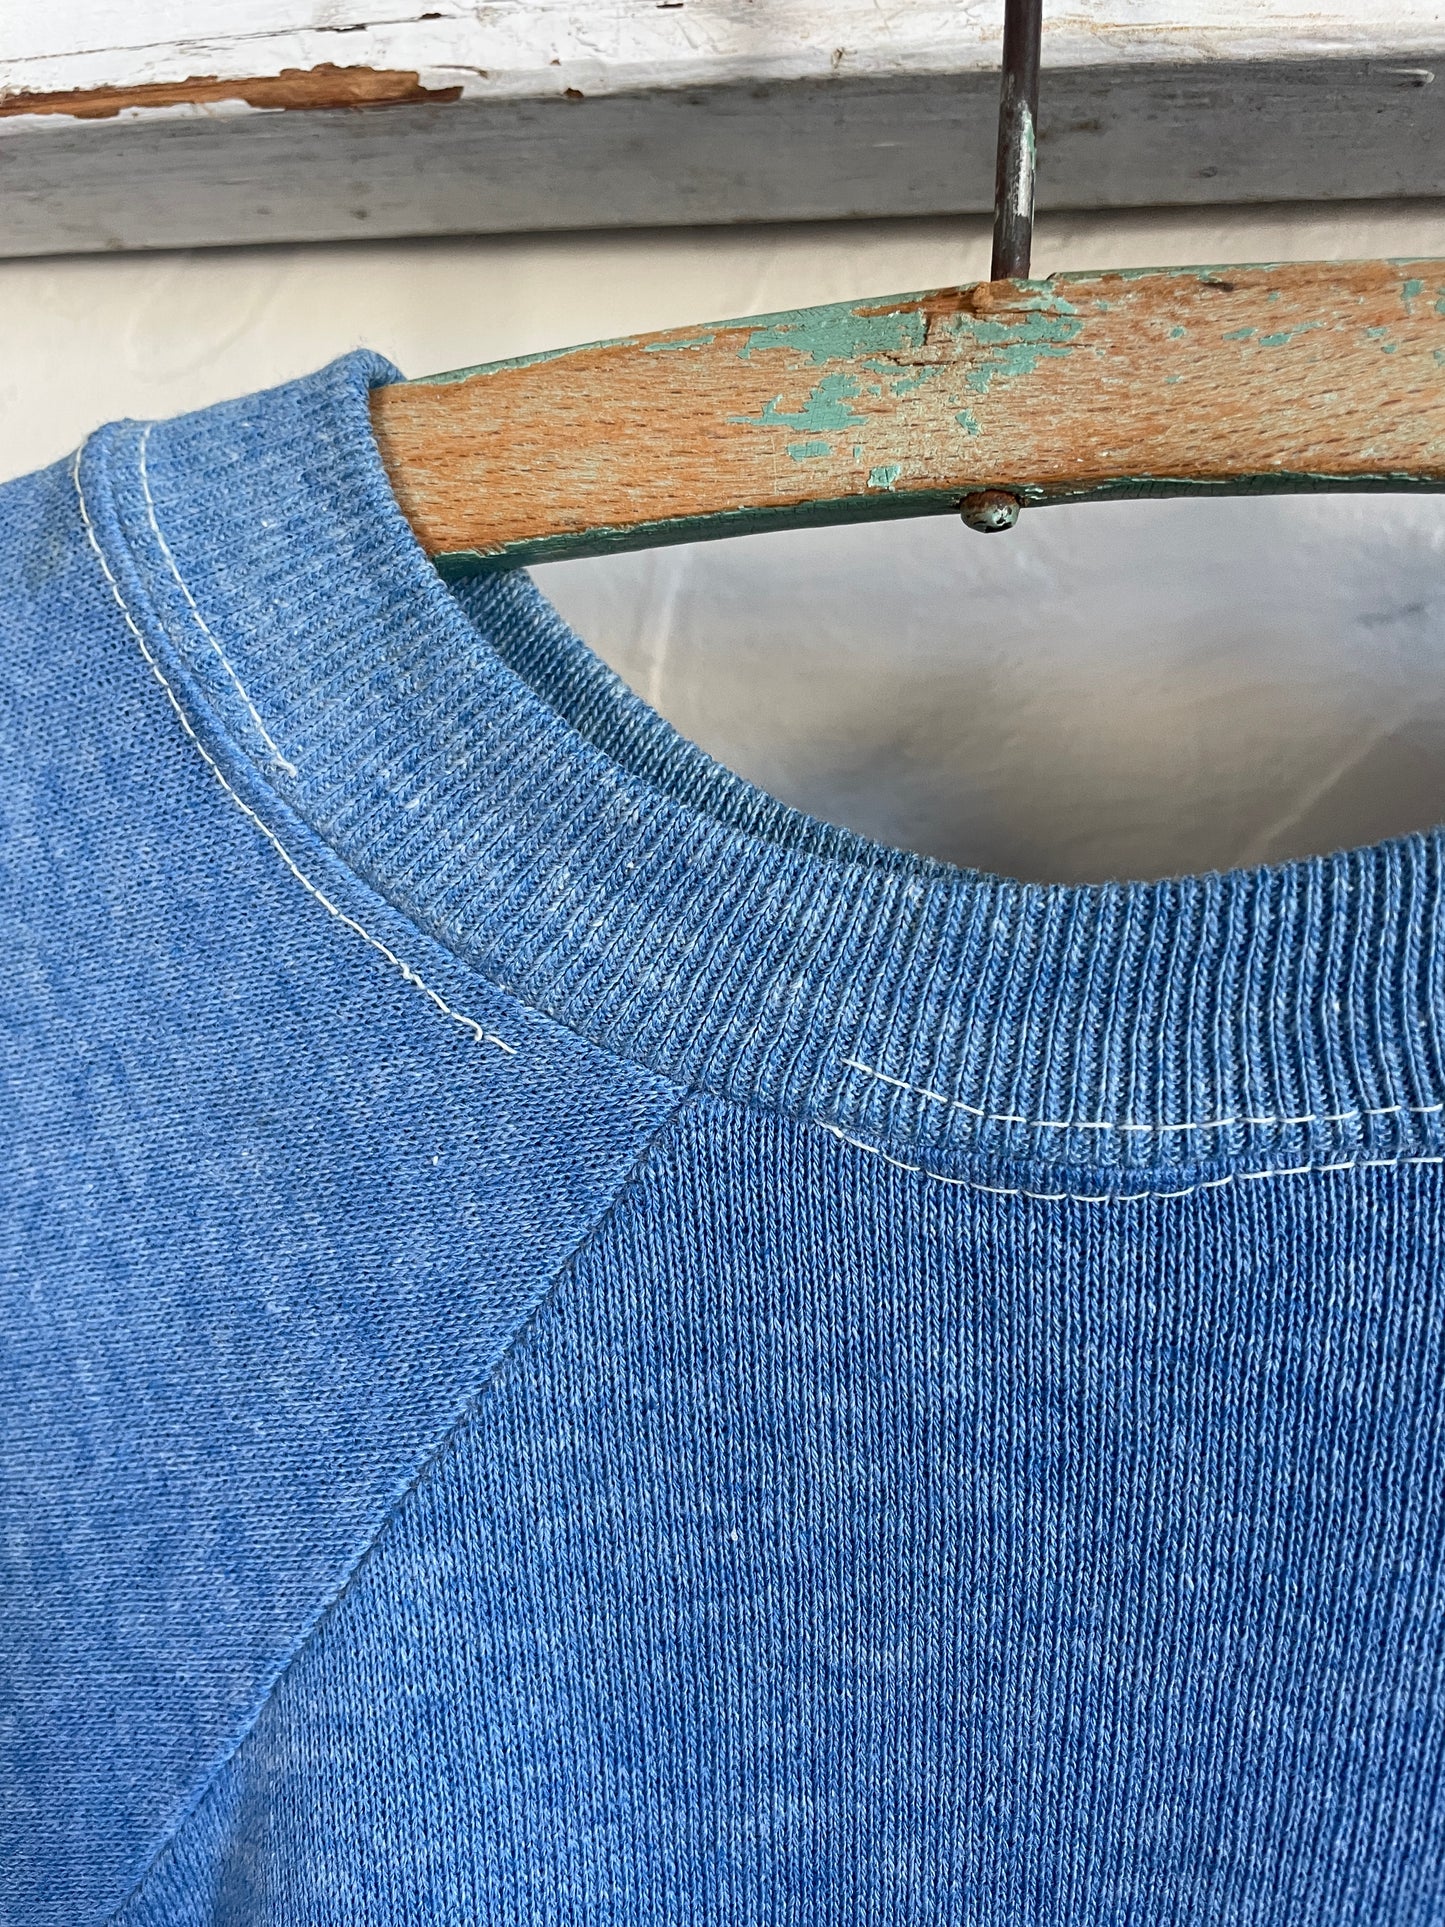 70s/80s Blank Blue Sweatshirt